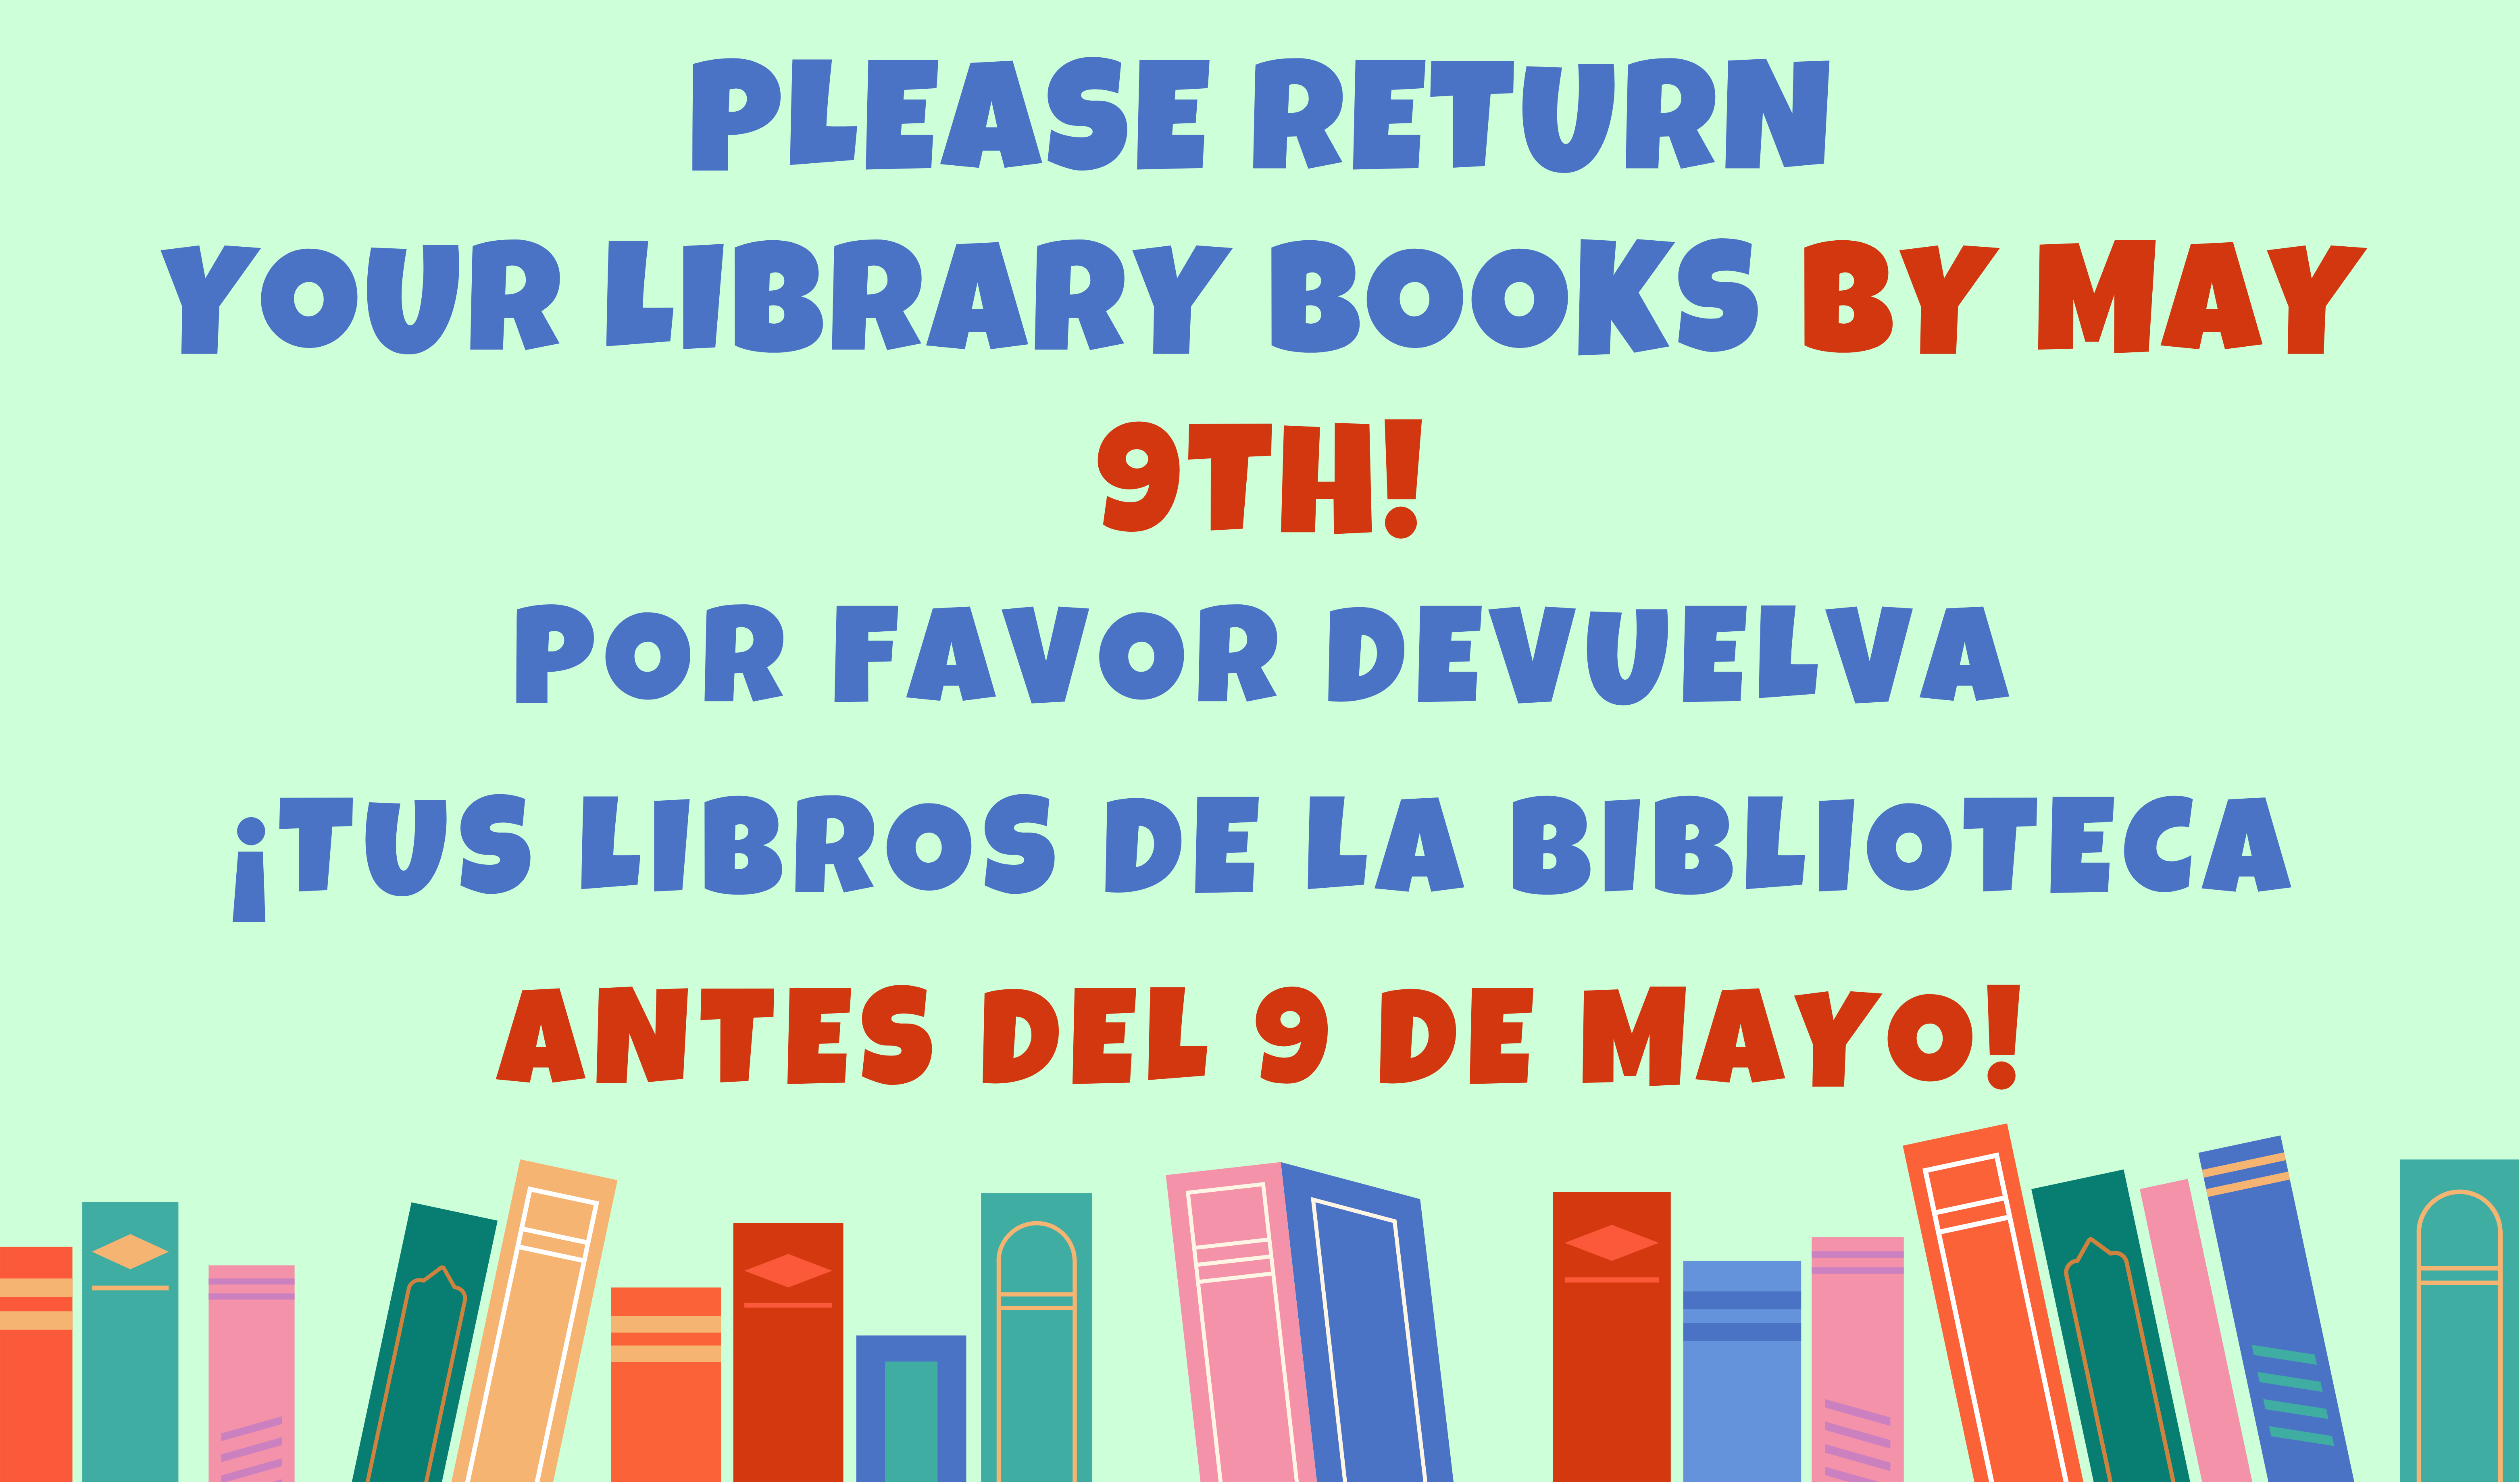 Please return your library books by may 9th! Spanish Translation: Por favor devuelva ¡Tus libros de la biblioteca antes del 9 de mayo!